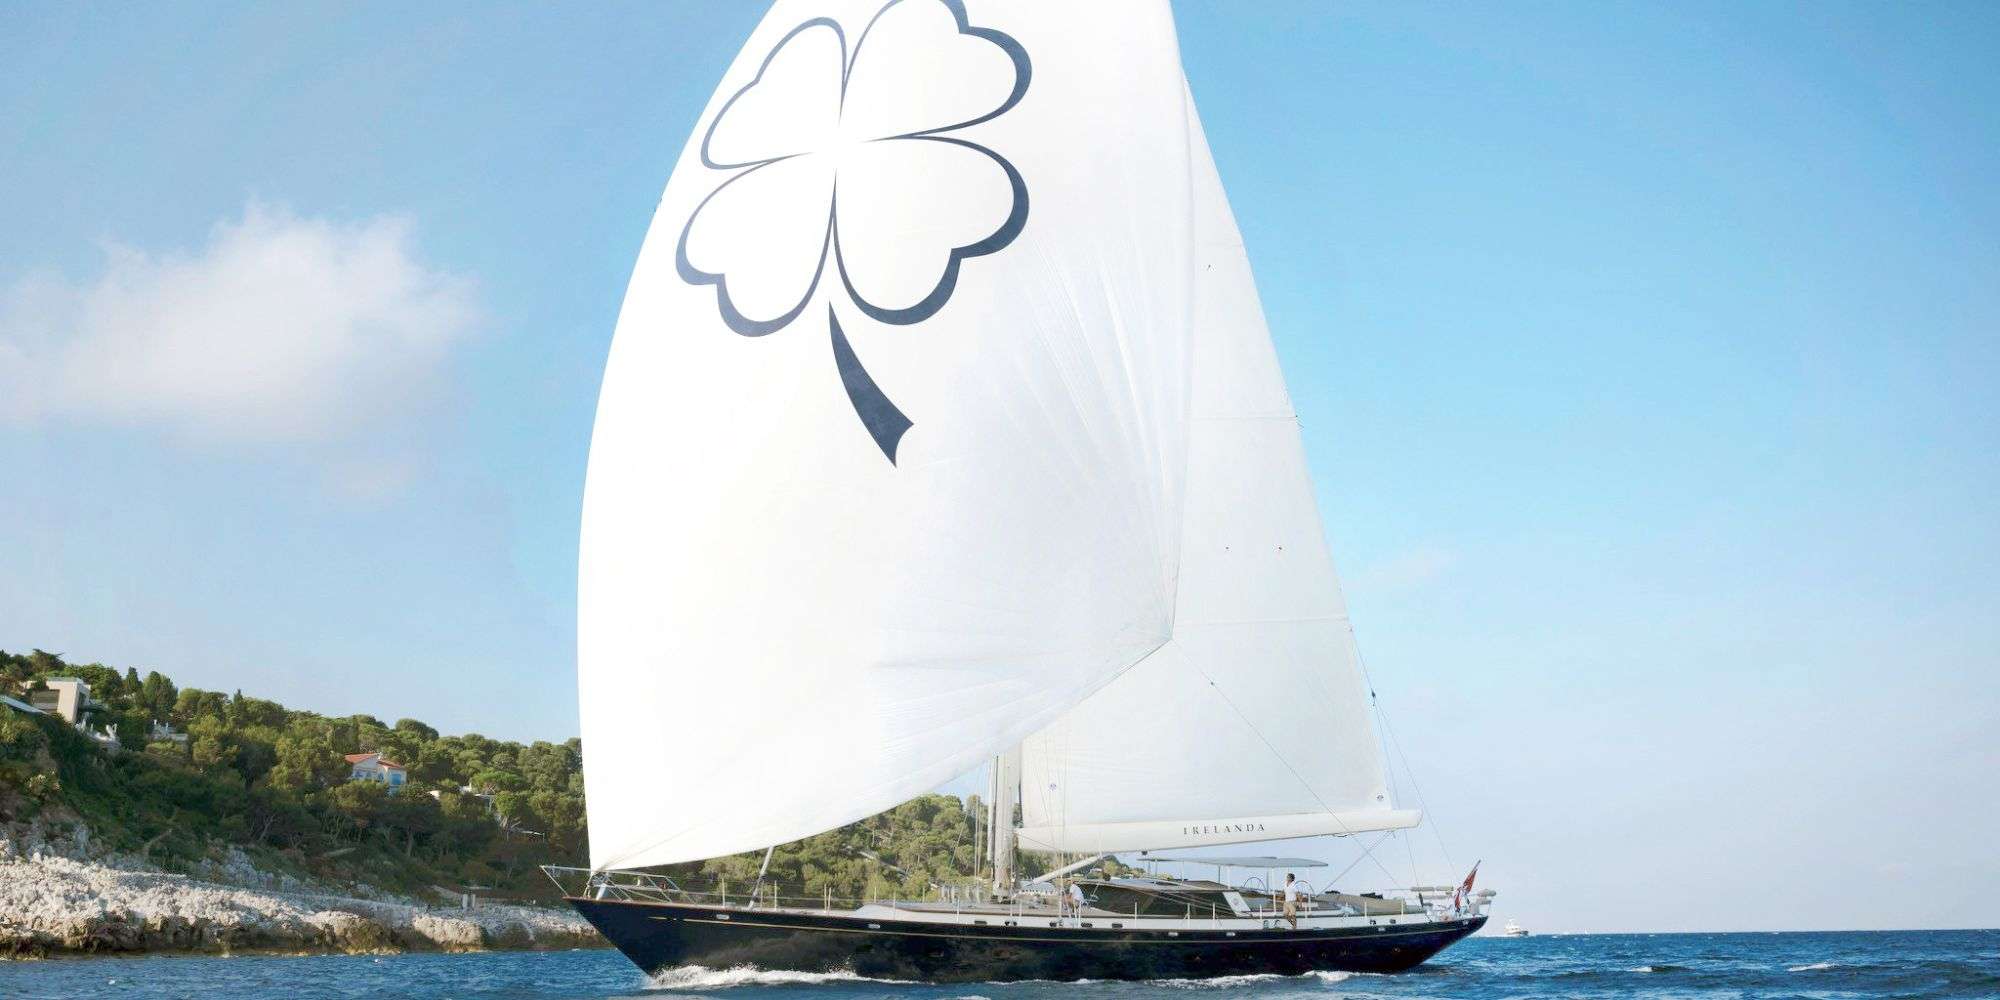 IRELANDA - Yacht Charter Vibo Marina & Boat hire in W. Med -Naples/Sicily, Greece, W. Med -Riviera/Cors/Sard., Turkey, Croatia | Winter: Caribbean Virgin Islands (US/BVI), Caribbean Leewards, Caribbean Windwards 3